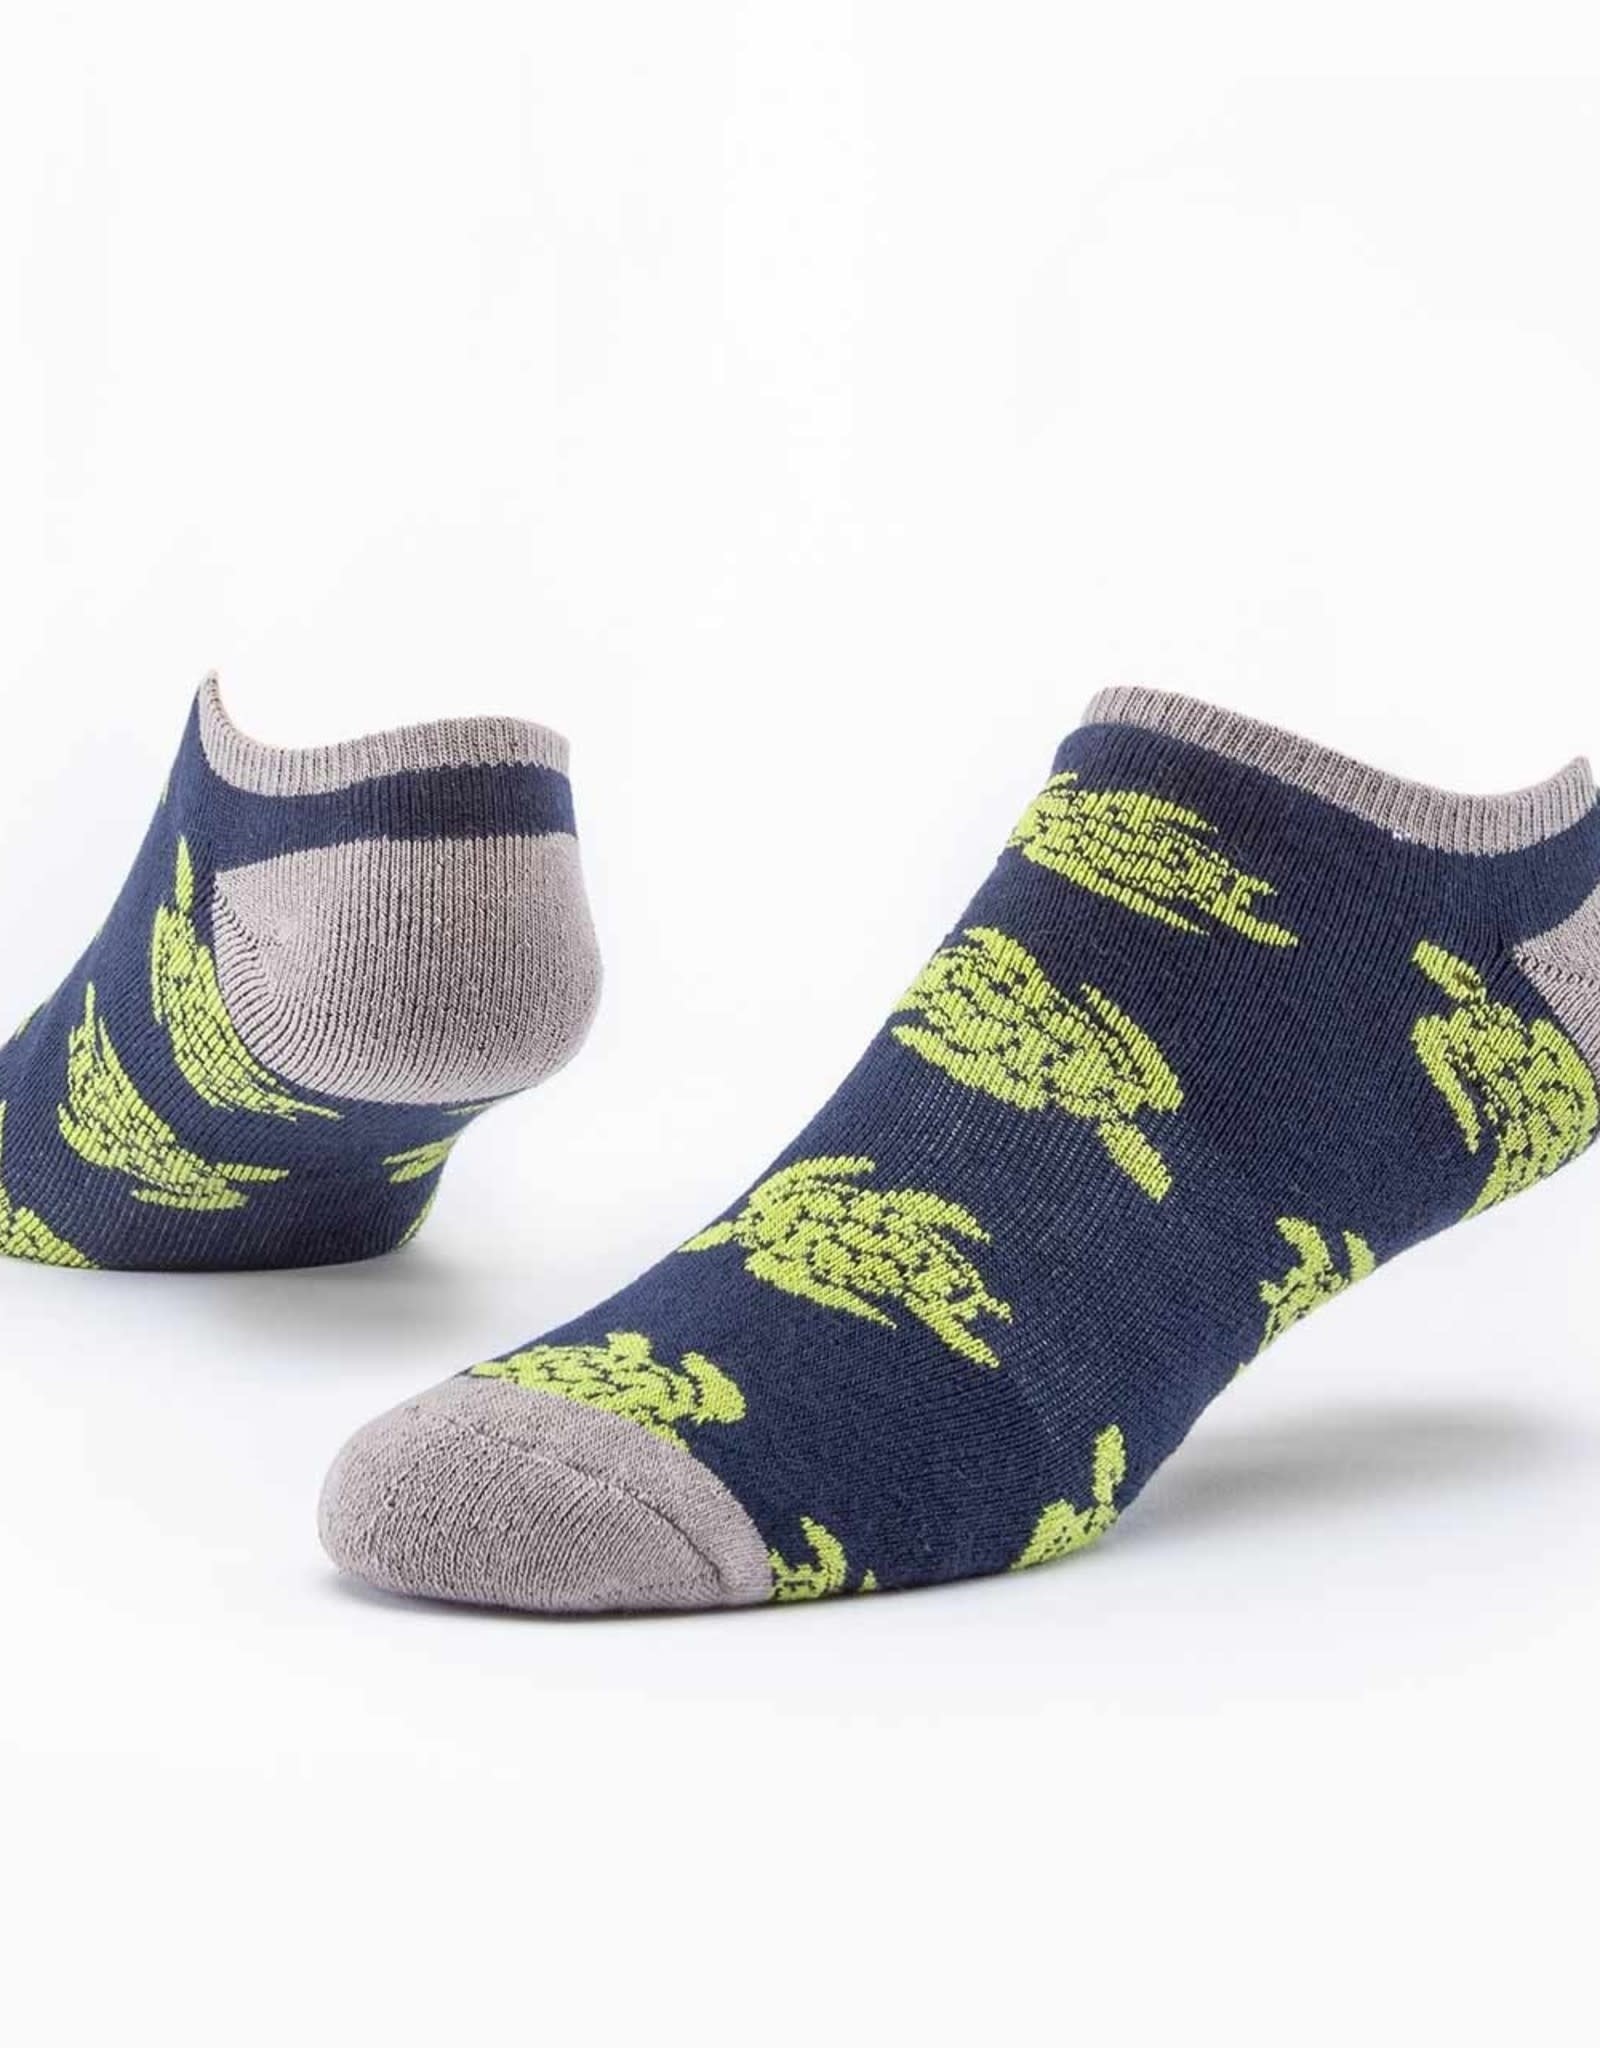 Maggie's Organics Footie Socks (Navy Turtles)